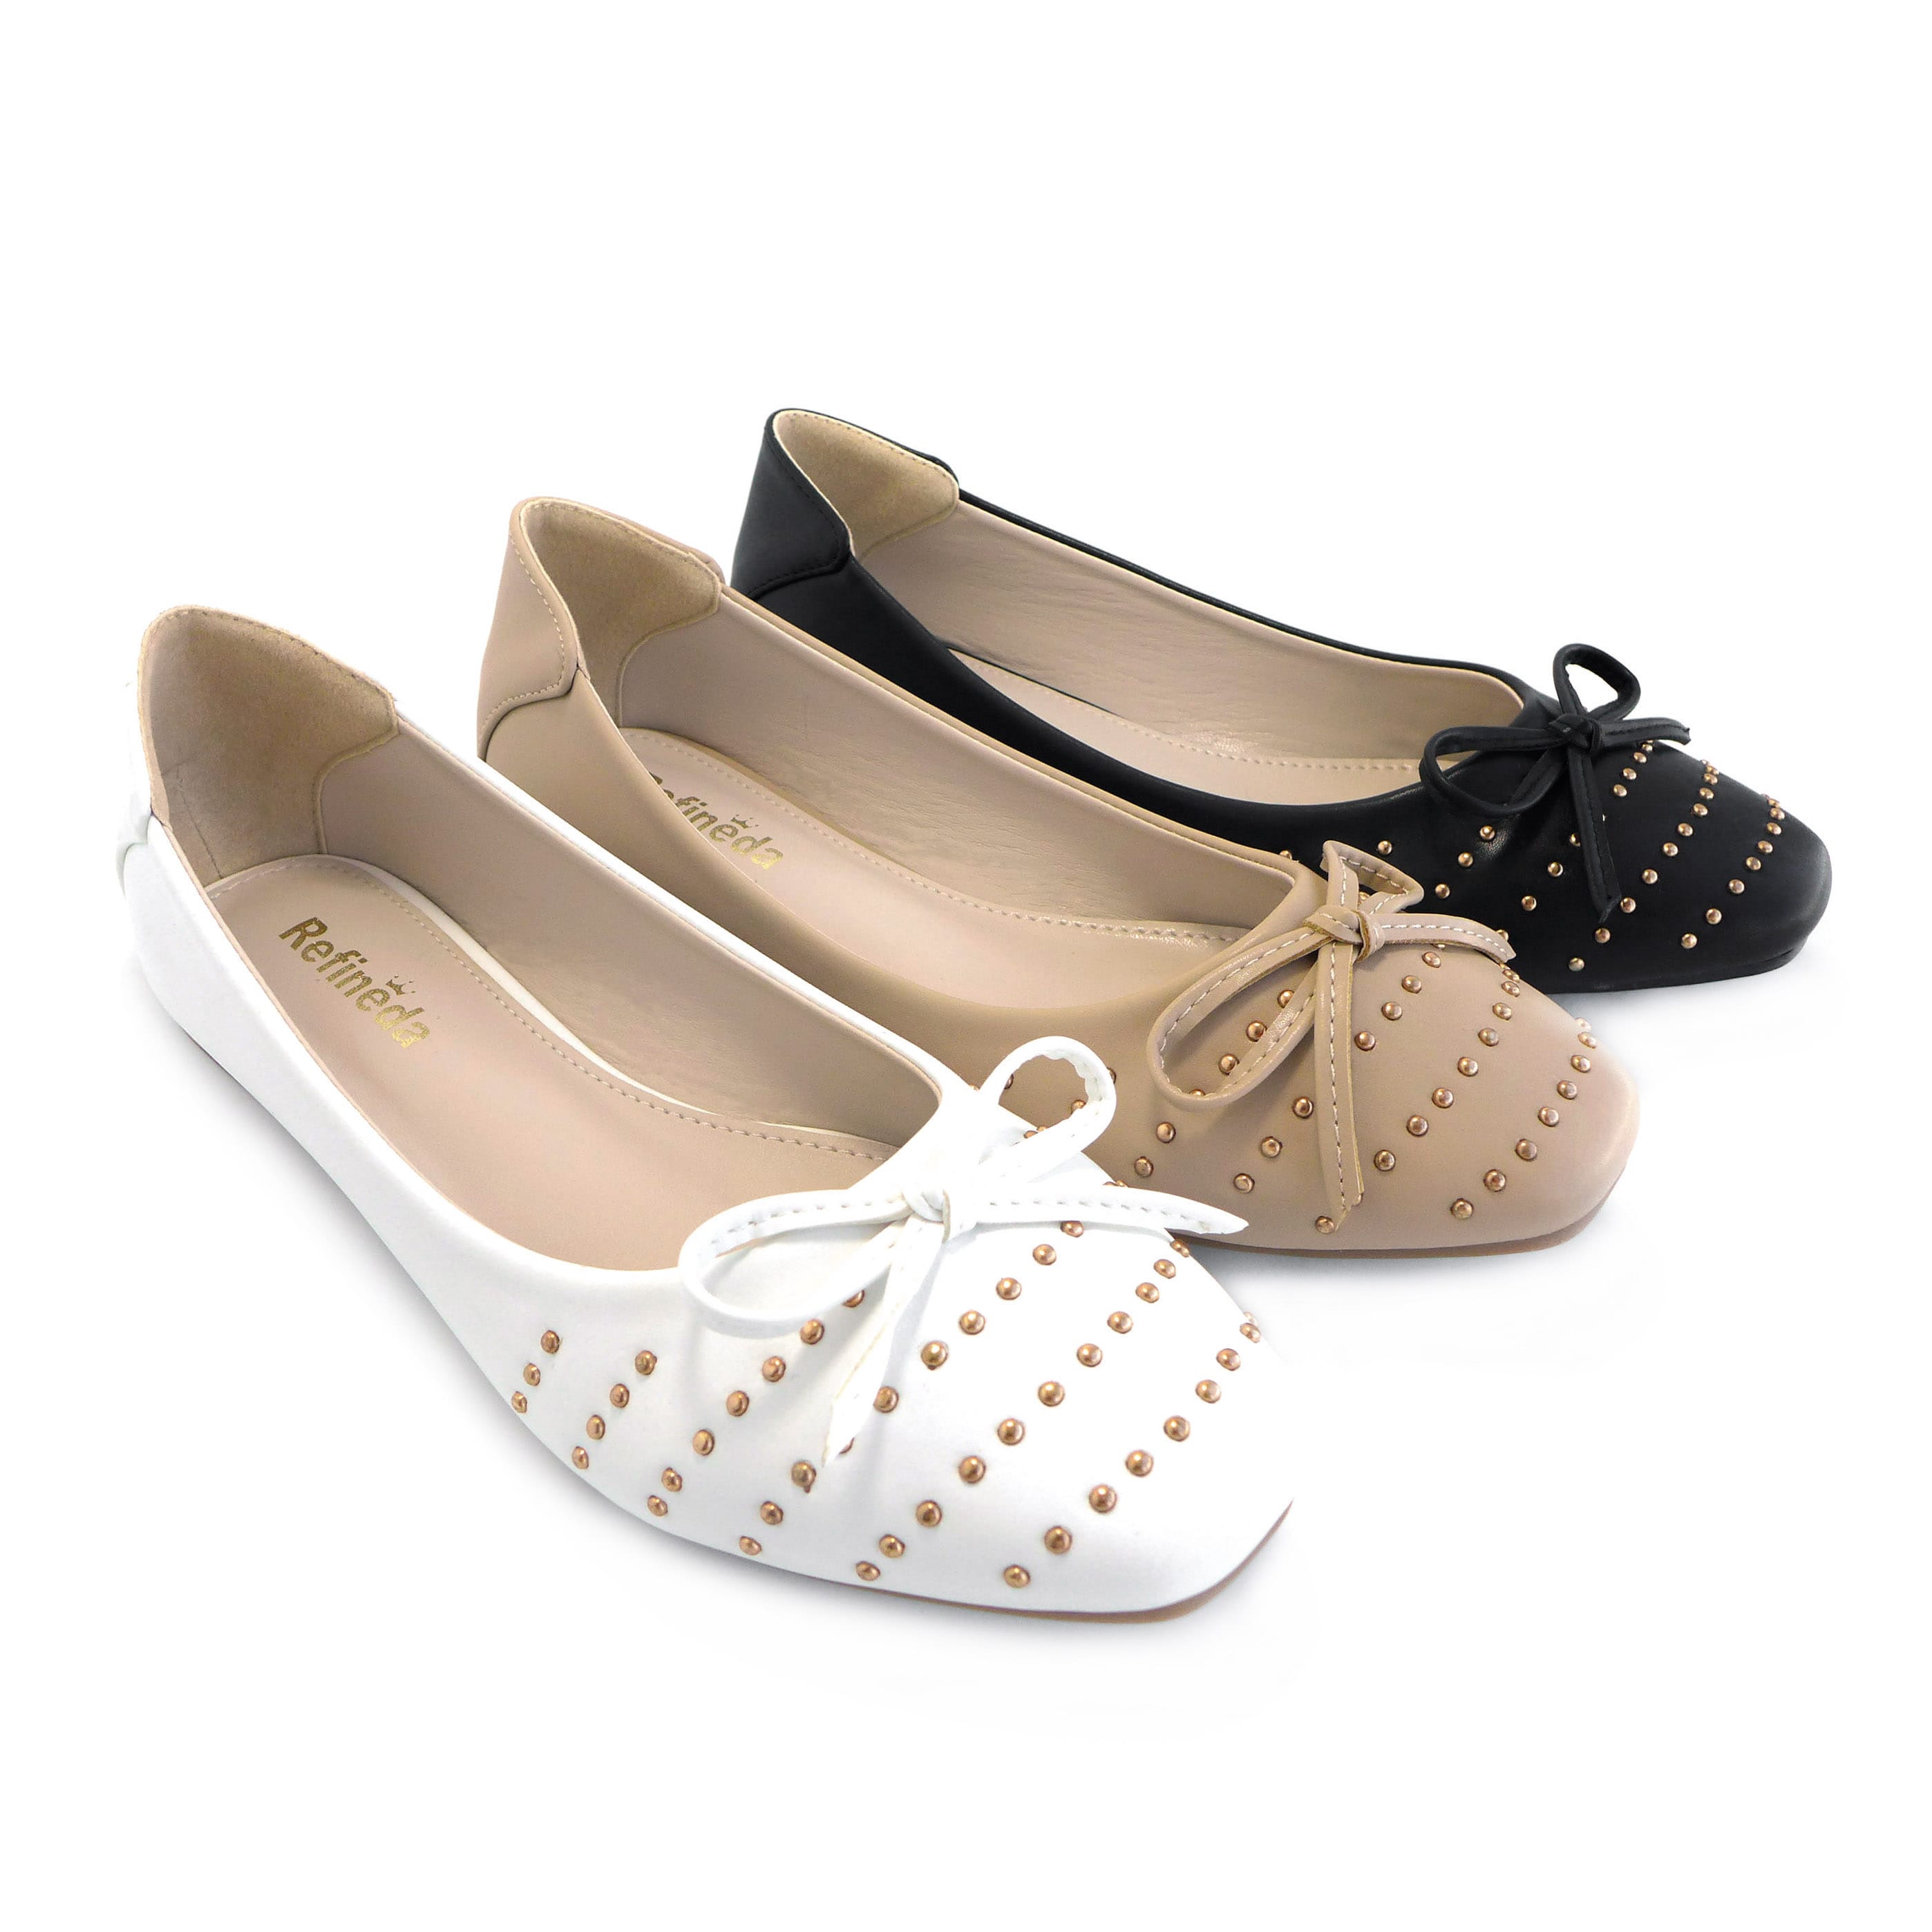 Refineda Women's Sole-Simple Ballerina Walking Flats Shoes